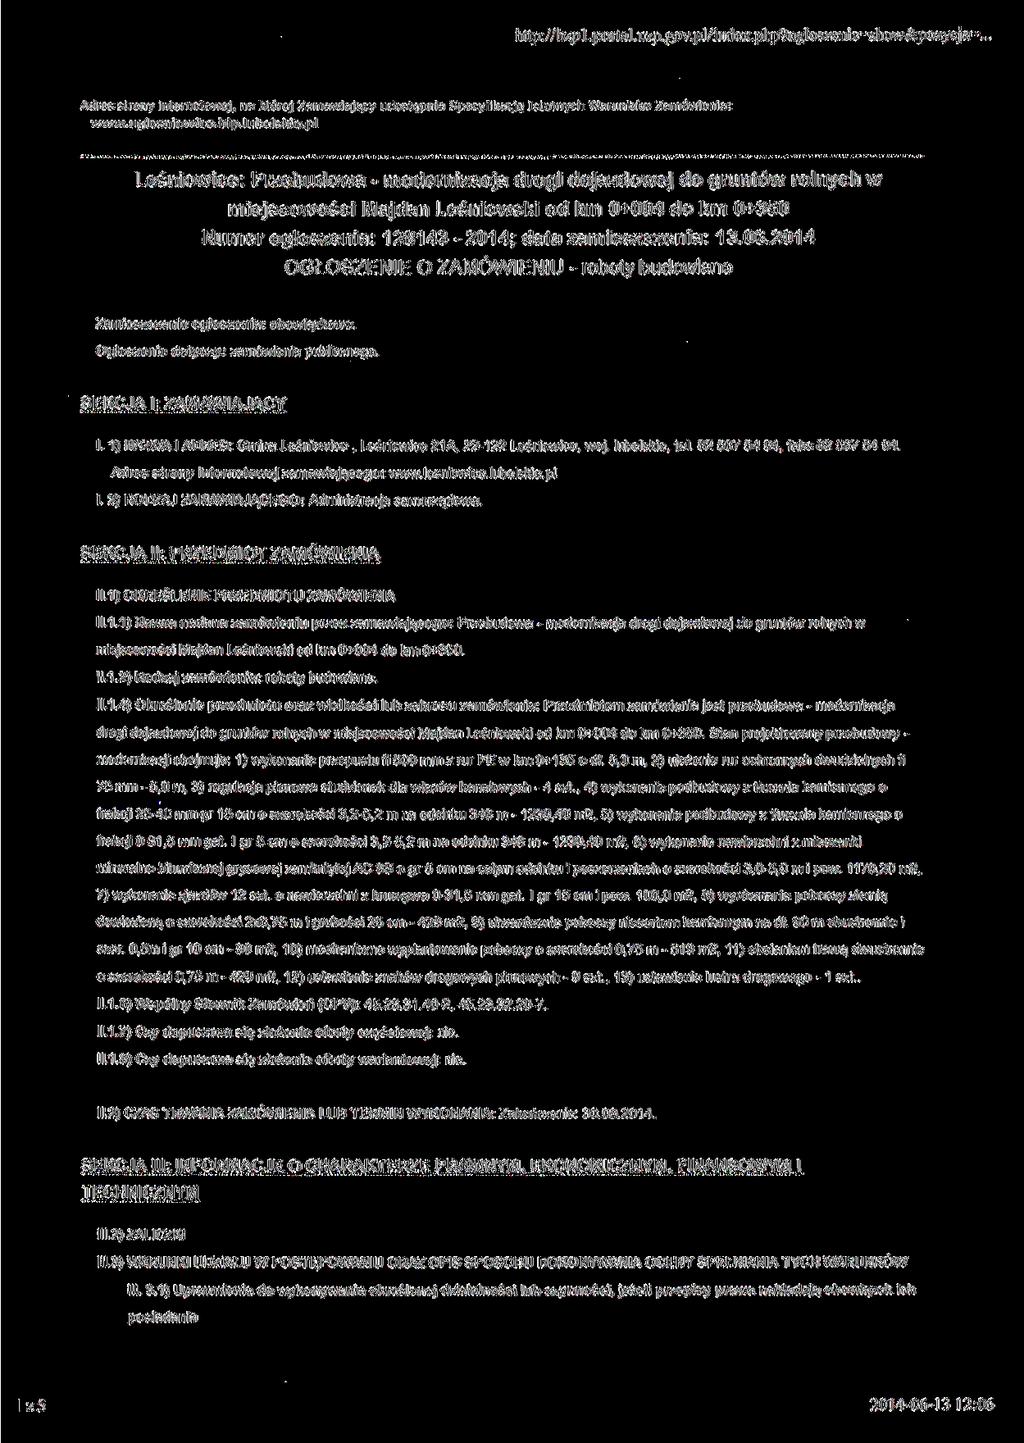 http://bzpl. portal. uzp.gov.pl/index.php?ogloszeme=show&po^cja=. Adres strony internatowej, na której Zamawiający udostępnia Specyfikacje Istotnych Warunków Zamówienia: www.uglesniowice.bip.